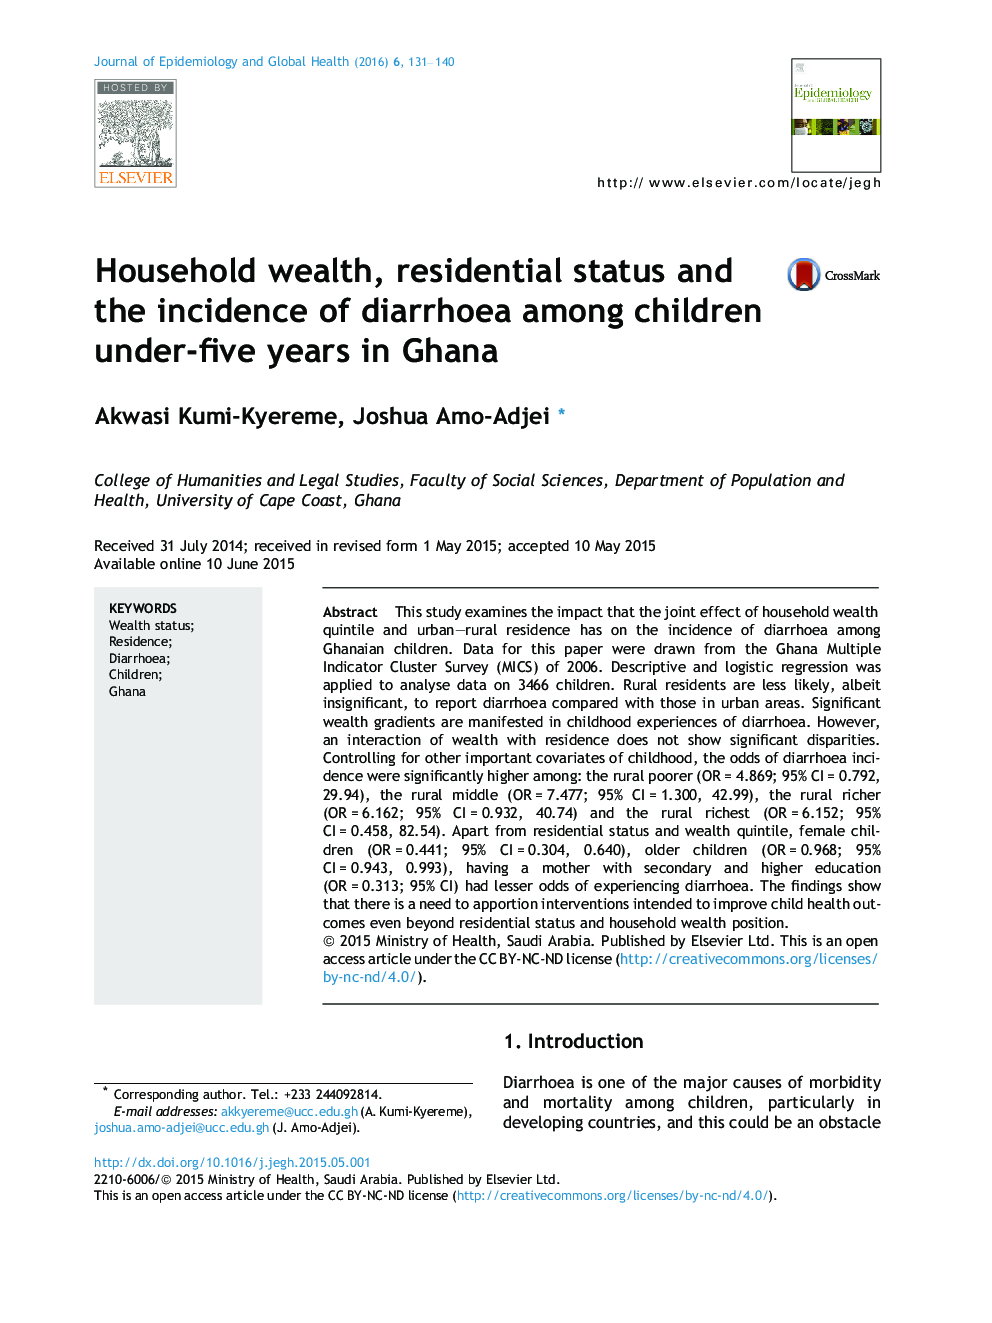 ثروت خانوار، وضعیت اقامتی و بروز اسهال در کودکان زیر پنج سال در غنا